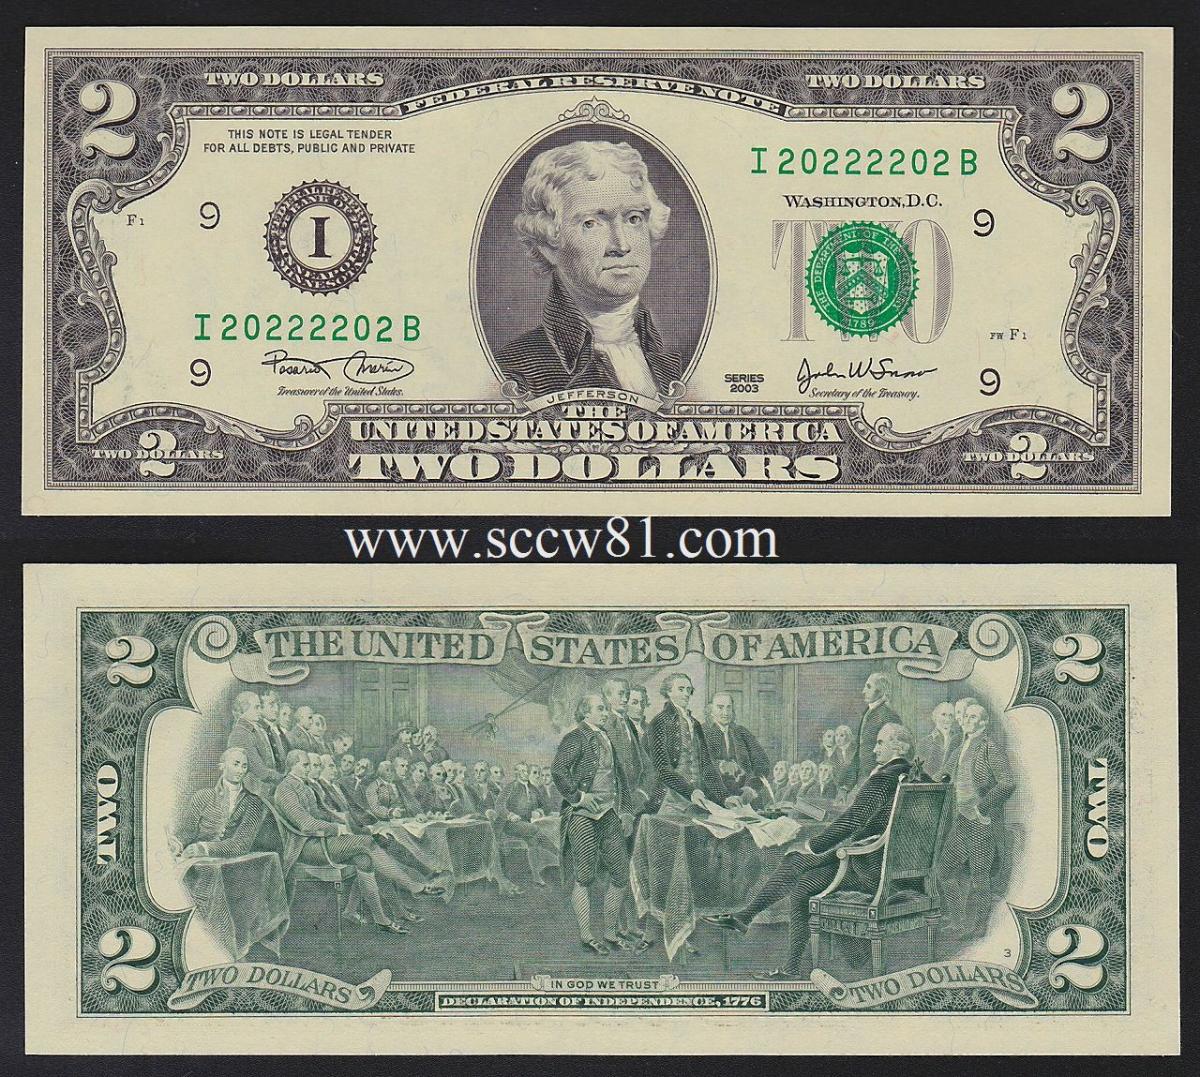 アメリカ2ドル紙幣 03年銘 I2222b 収集ワールド